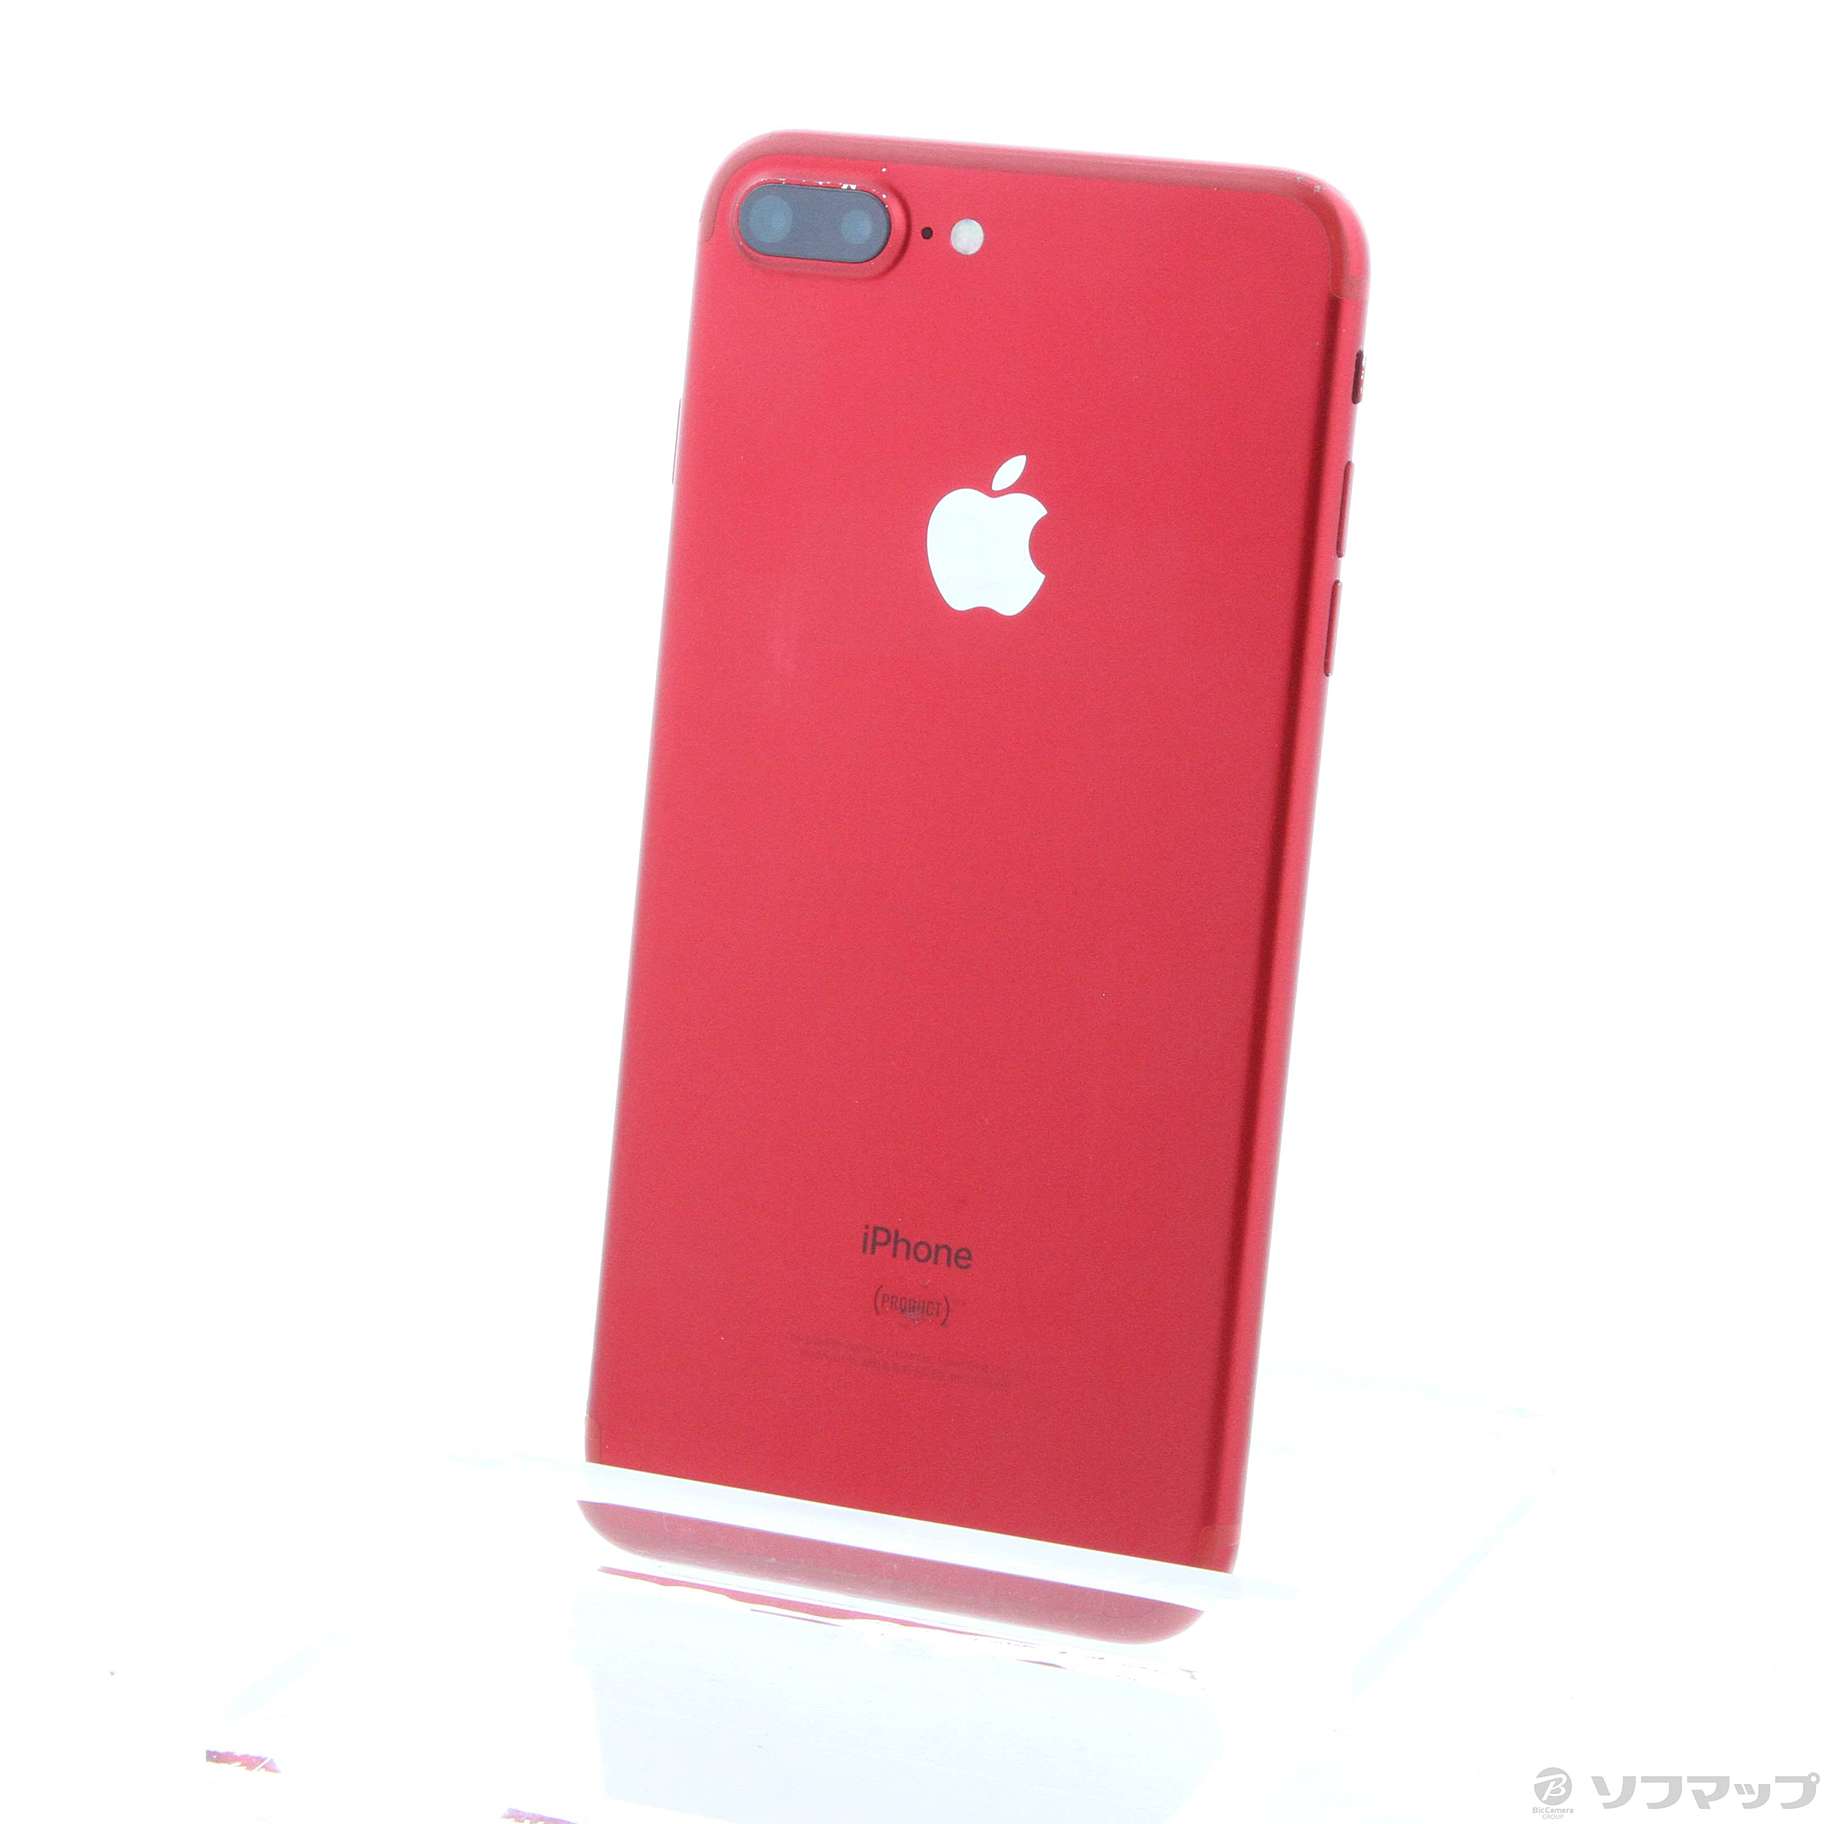 iPhone7 Plus 128GB Simフリー Product Red www.krzysztofbialy.com